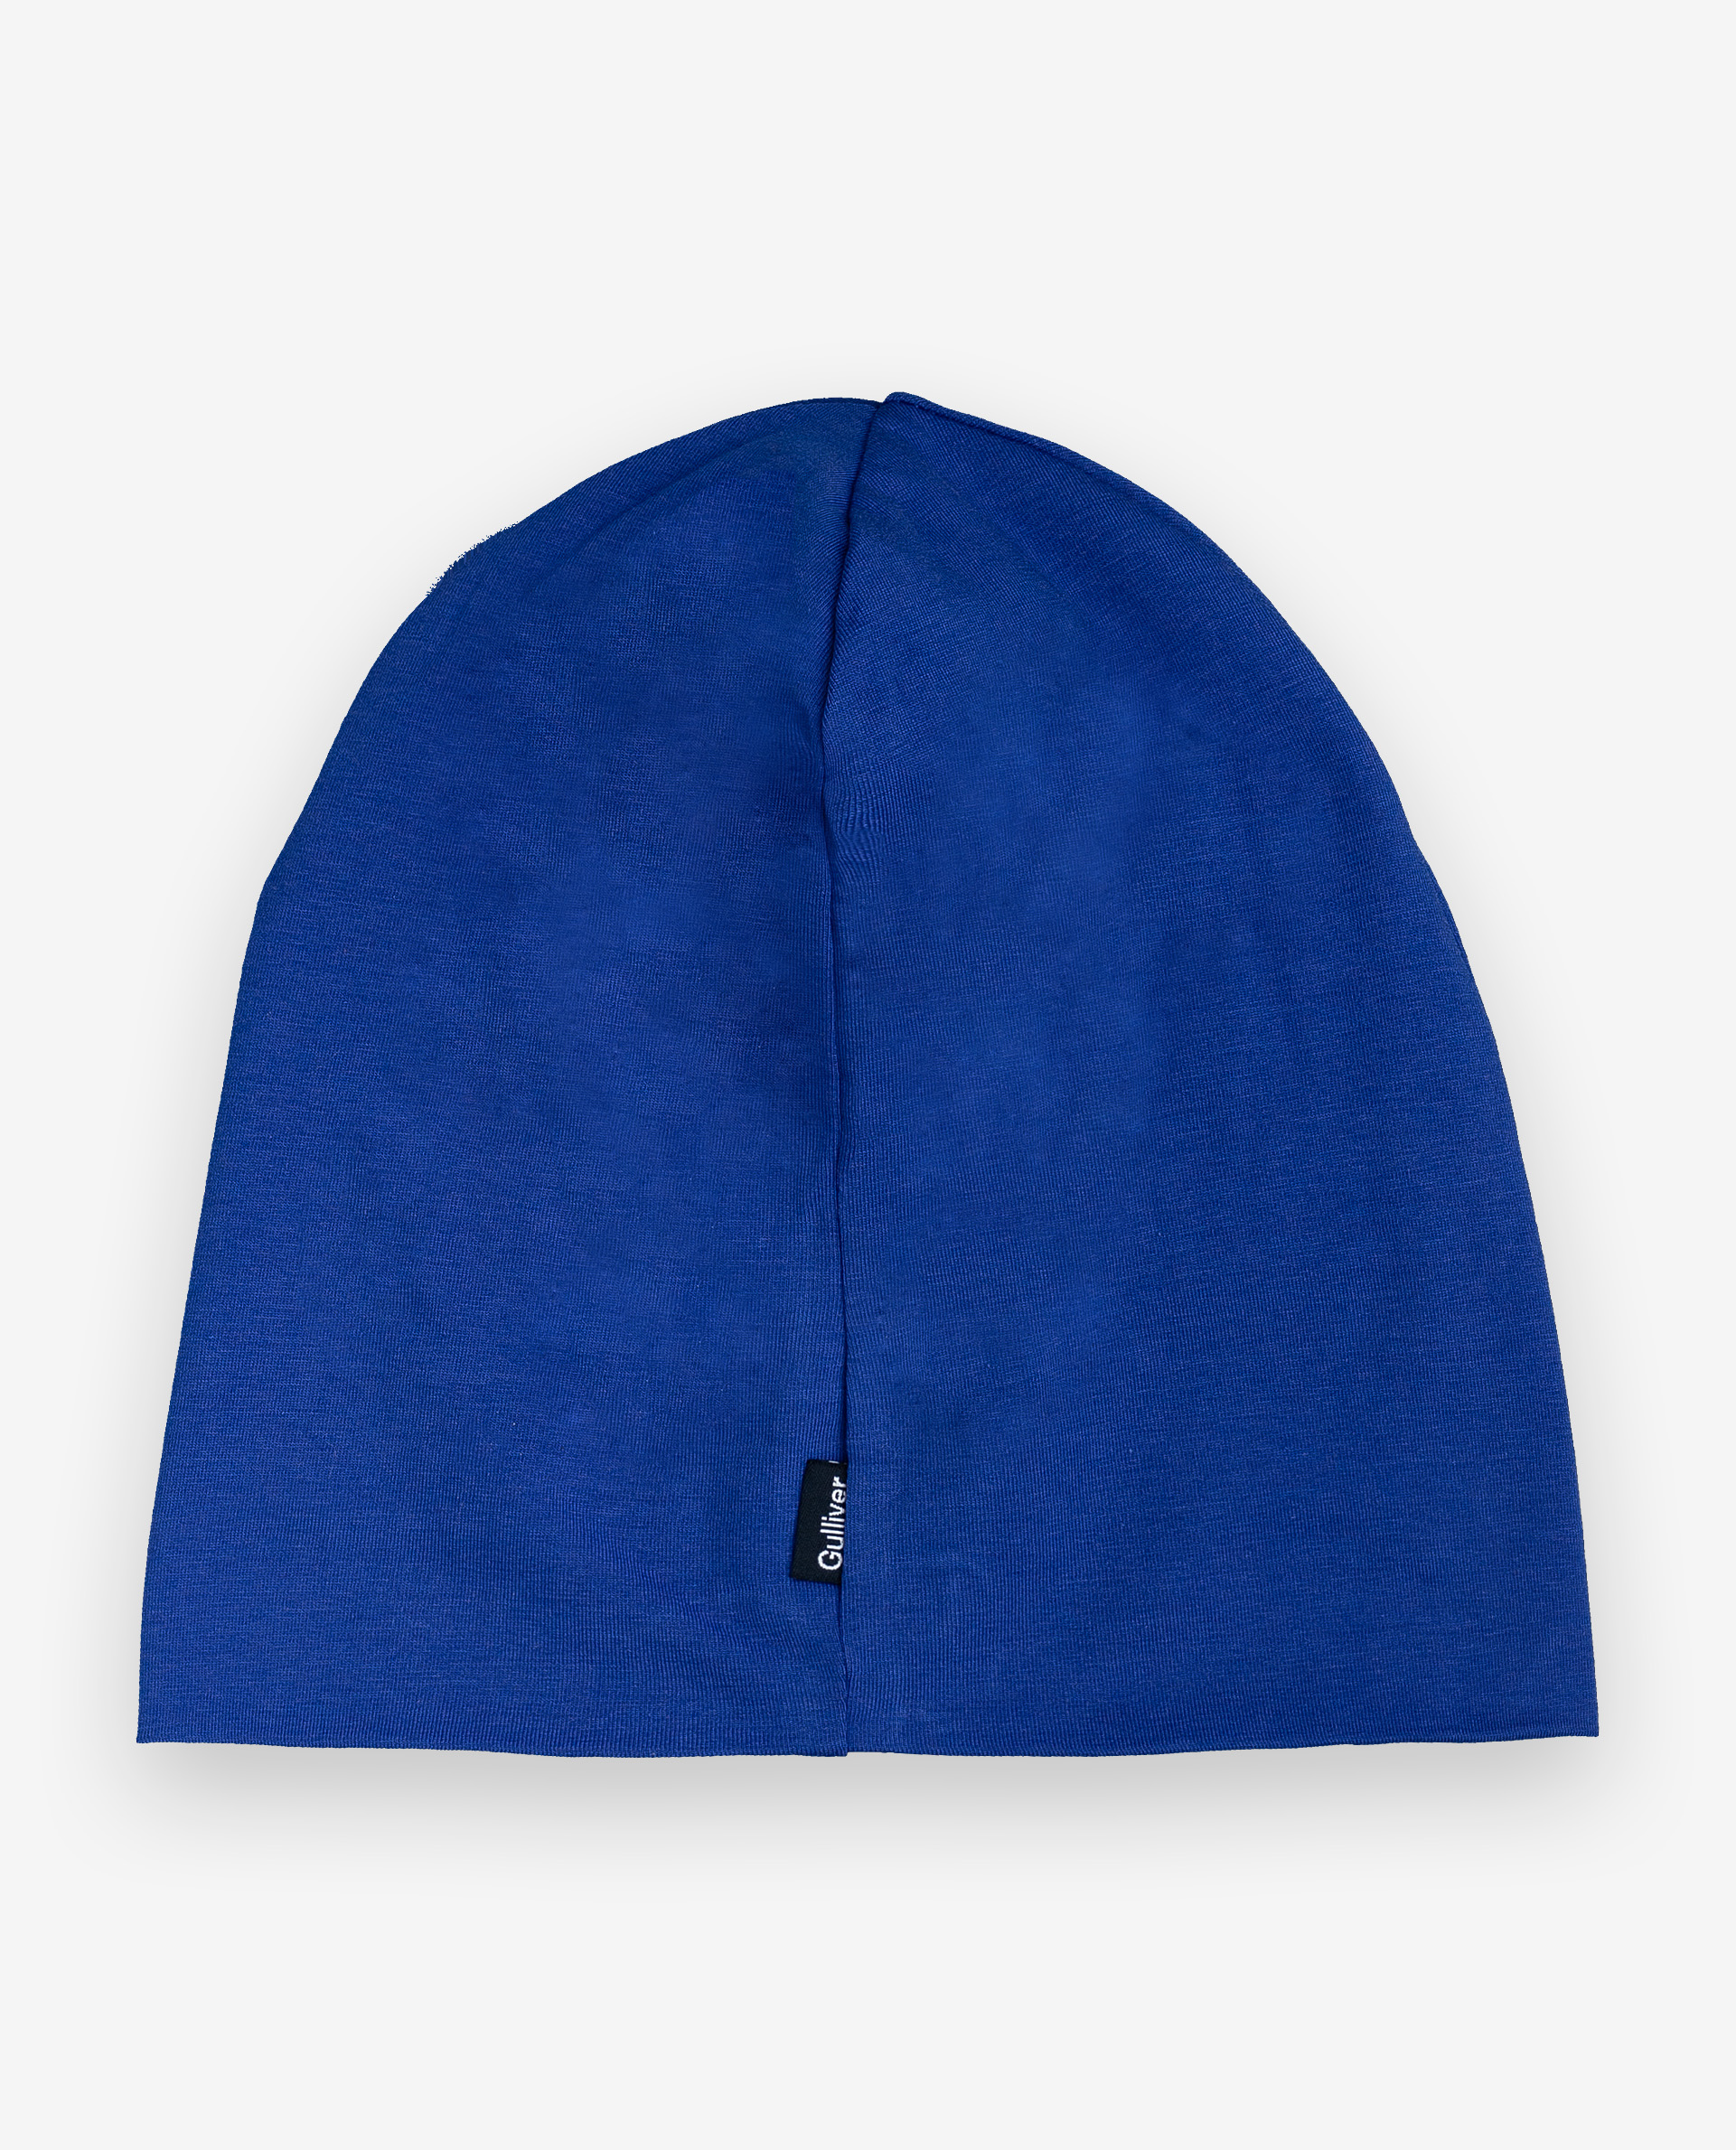 Синяя шапка с принтом Gulliver 12004BMC7302, размер 50 - фото 2